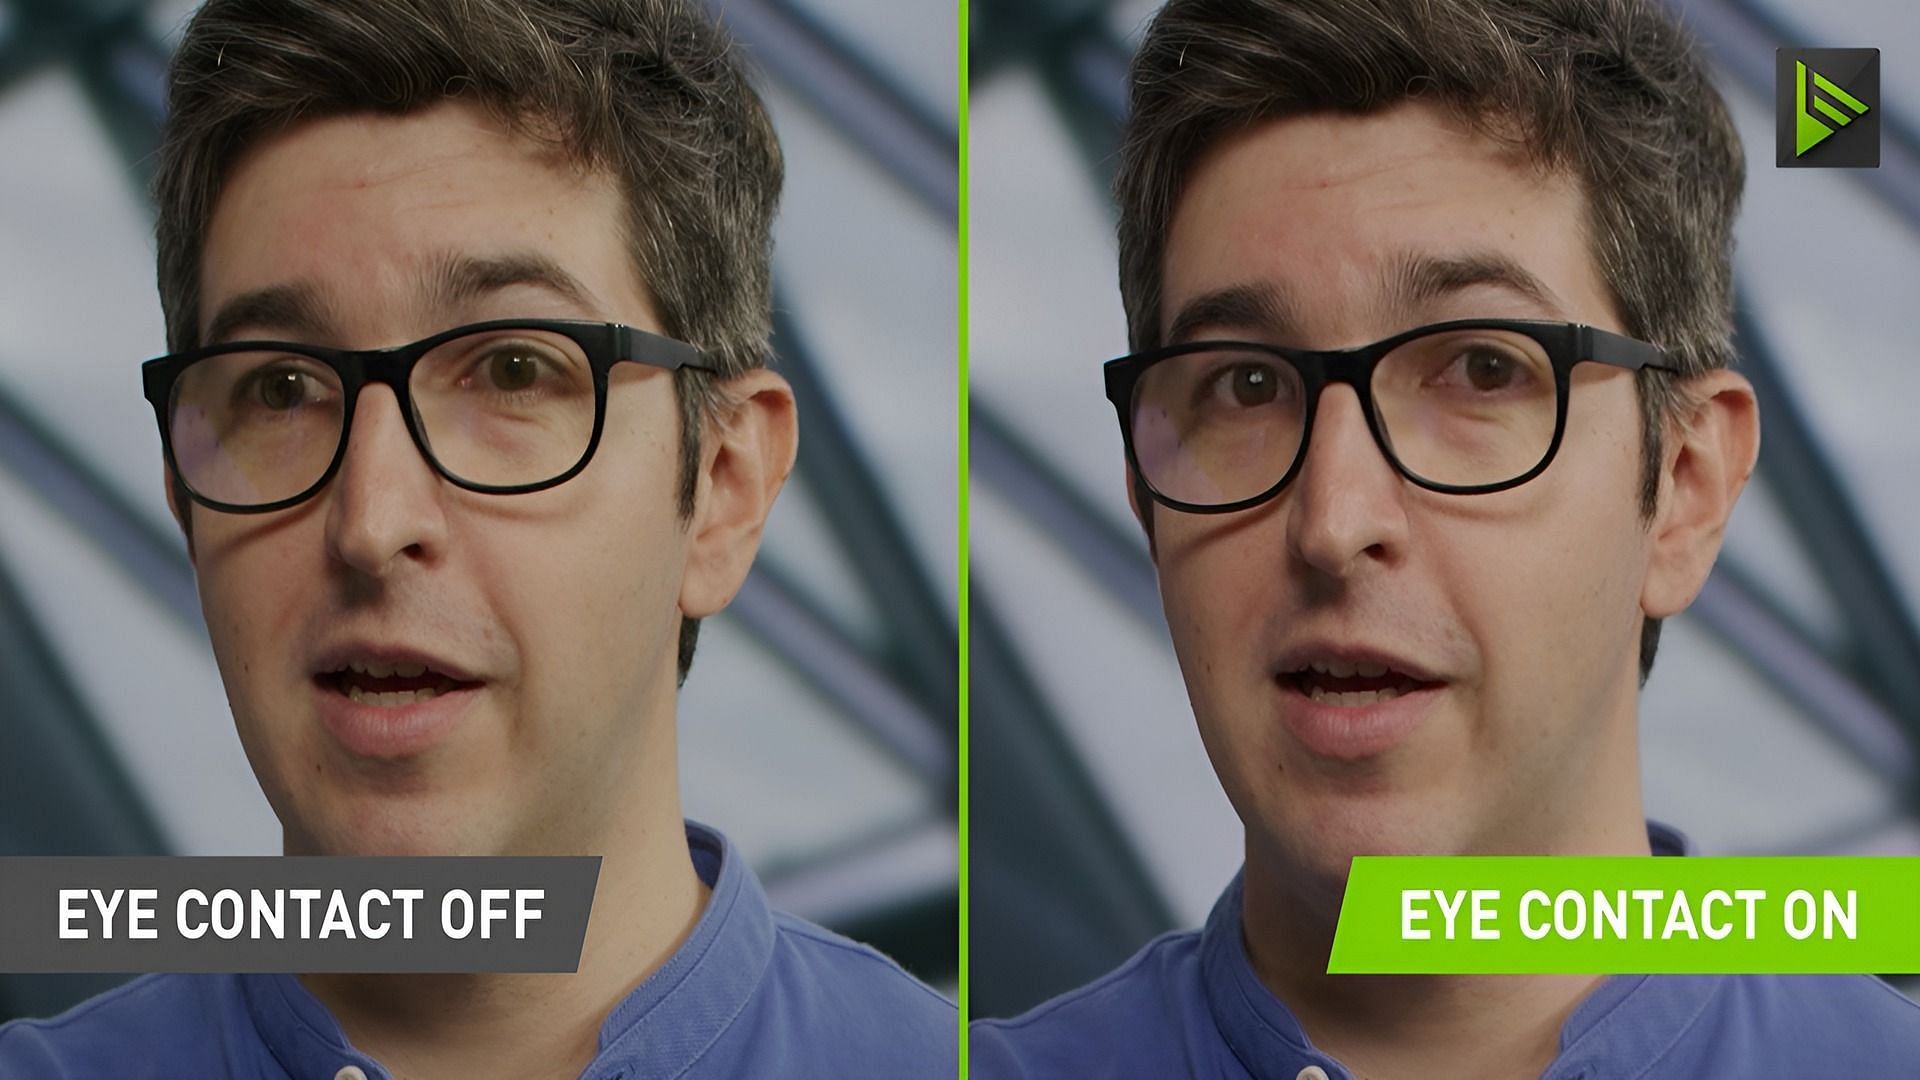 The Nvidia eye contact feature demo (Image via Nvidia)